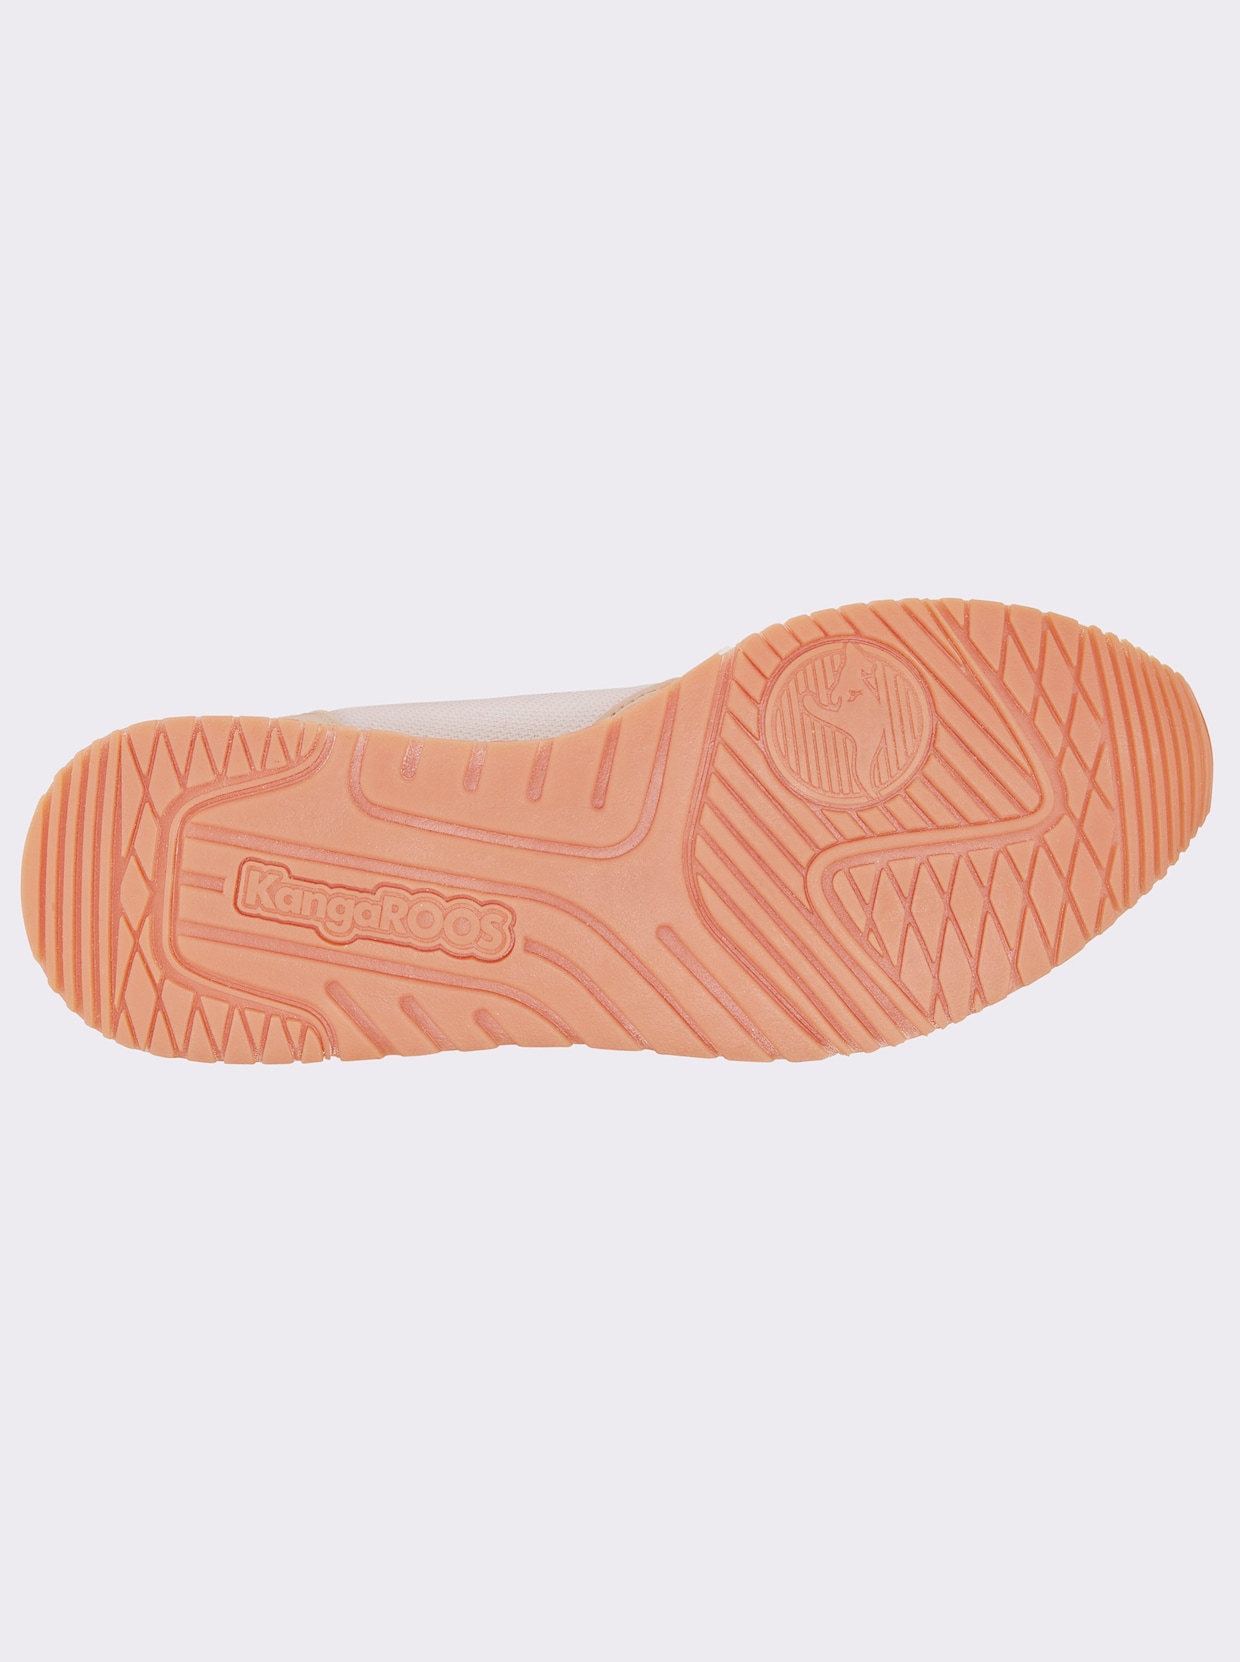 KangaROOS Sneaker - weiß-pastell